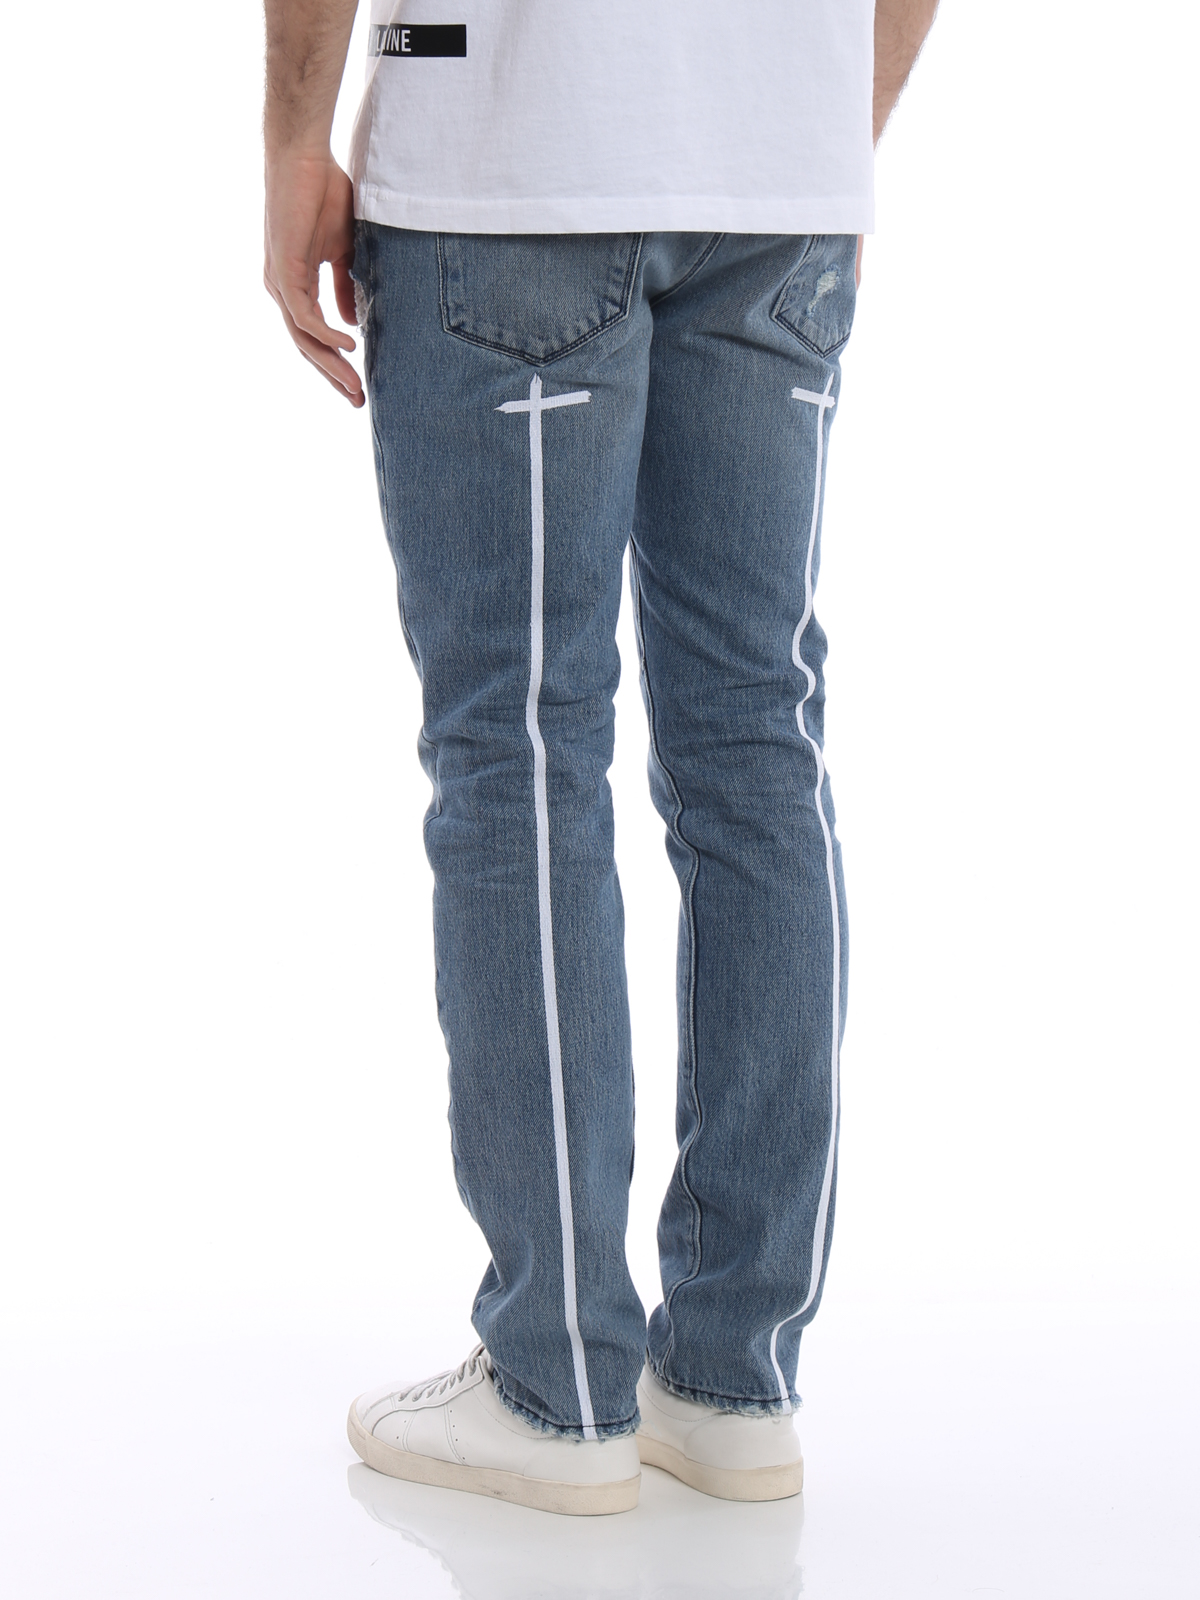 Sluipmoordenaar Adverteerder Civiel Straight leg jeans Rta - Embroidered original blue jeans -  MH71323ORGBLORIBLU